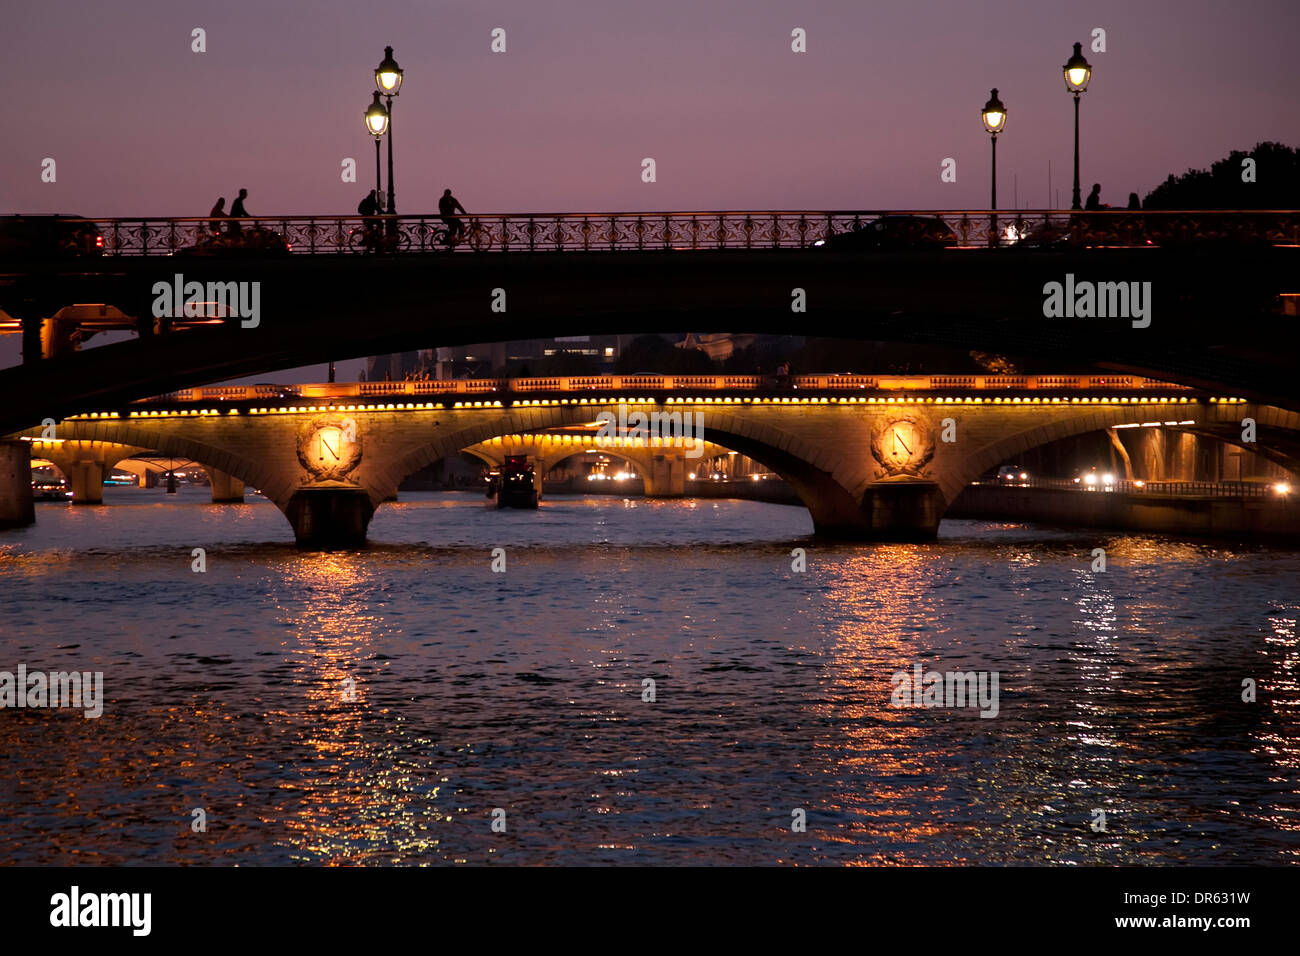 Bridges over the River Seine in Paris at night Stock Photo